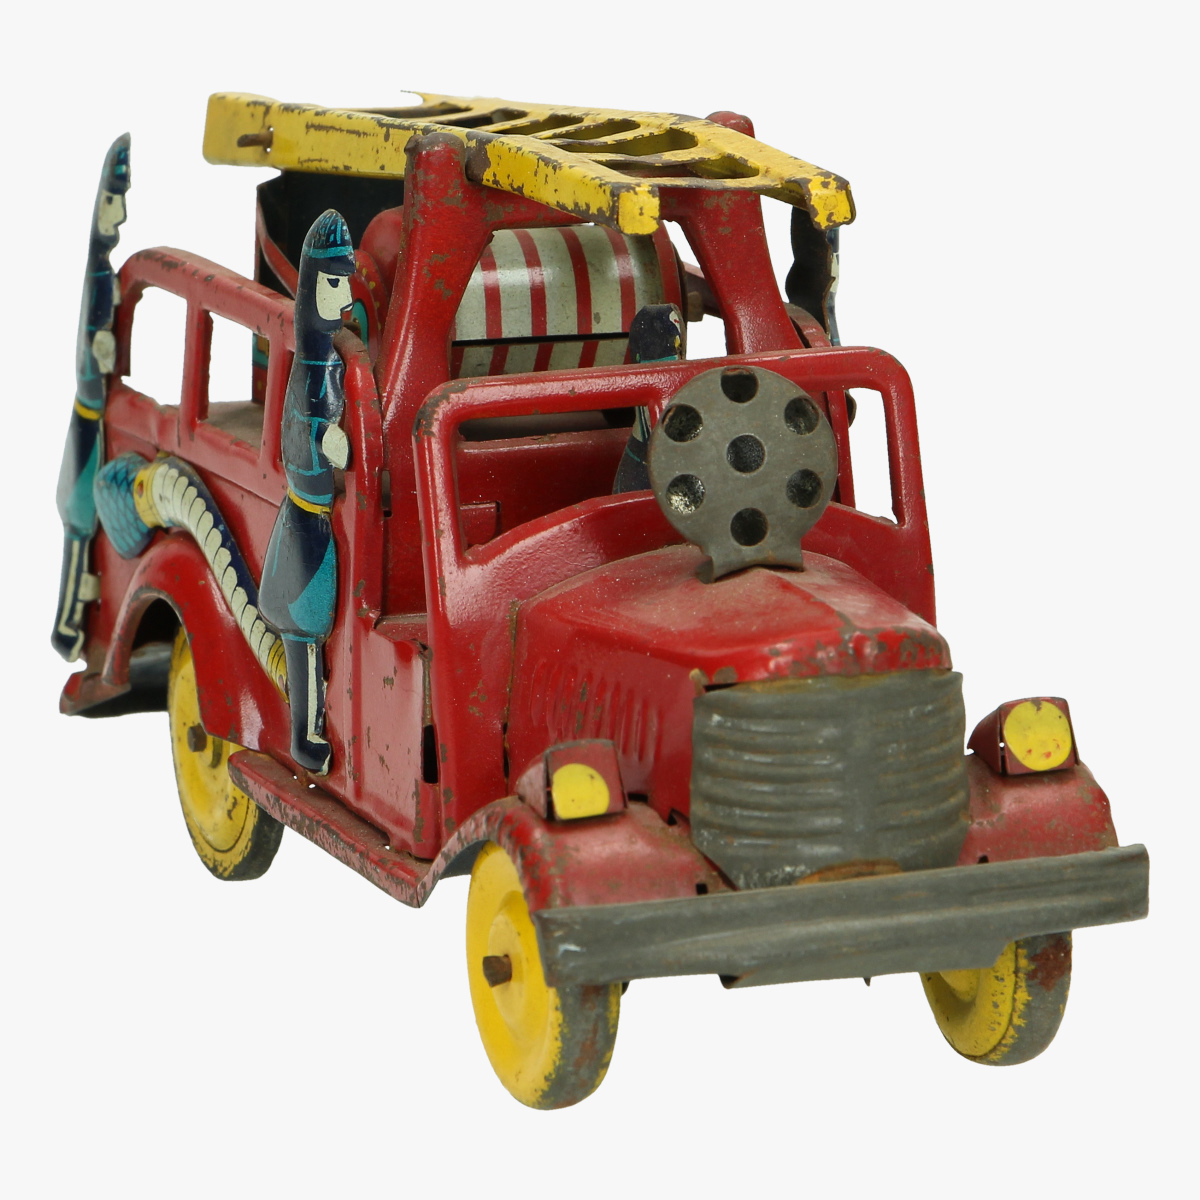 Afbeeldingen van oude blikken brandweerwagen made in Japan